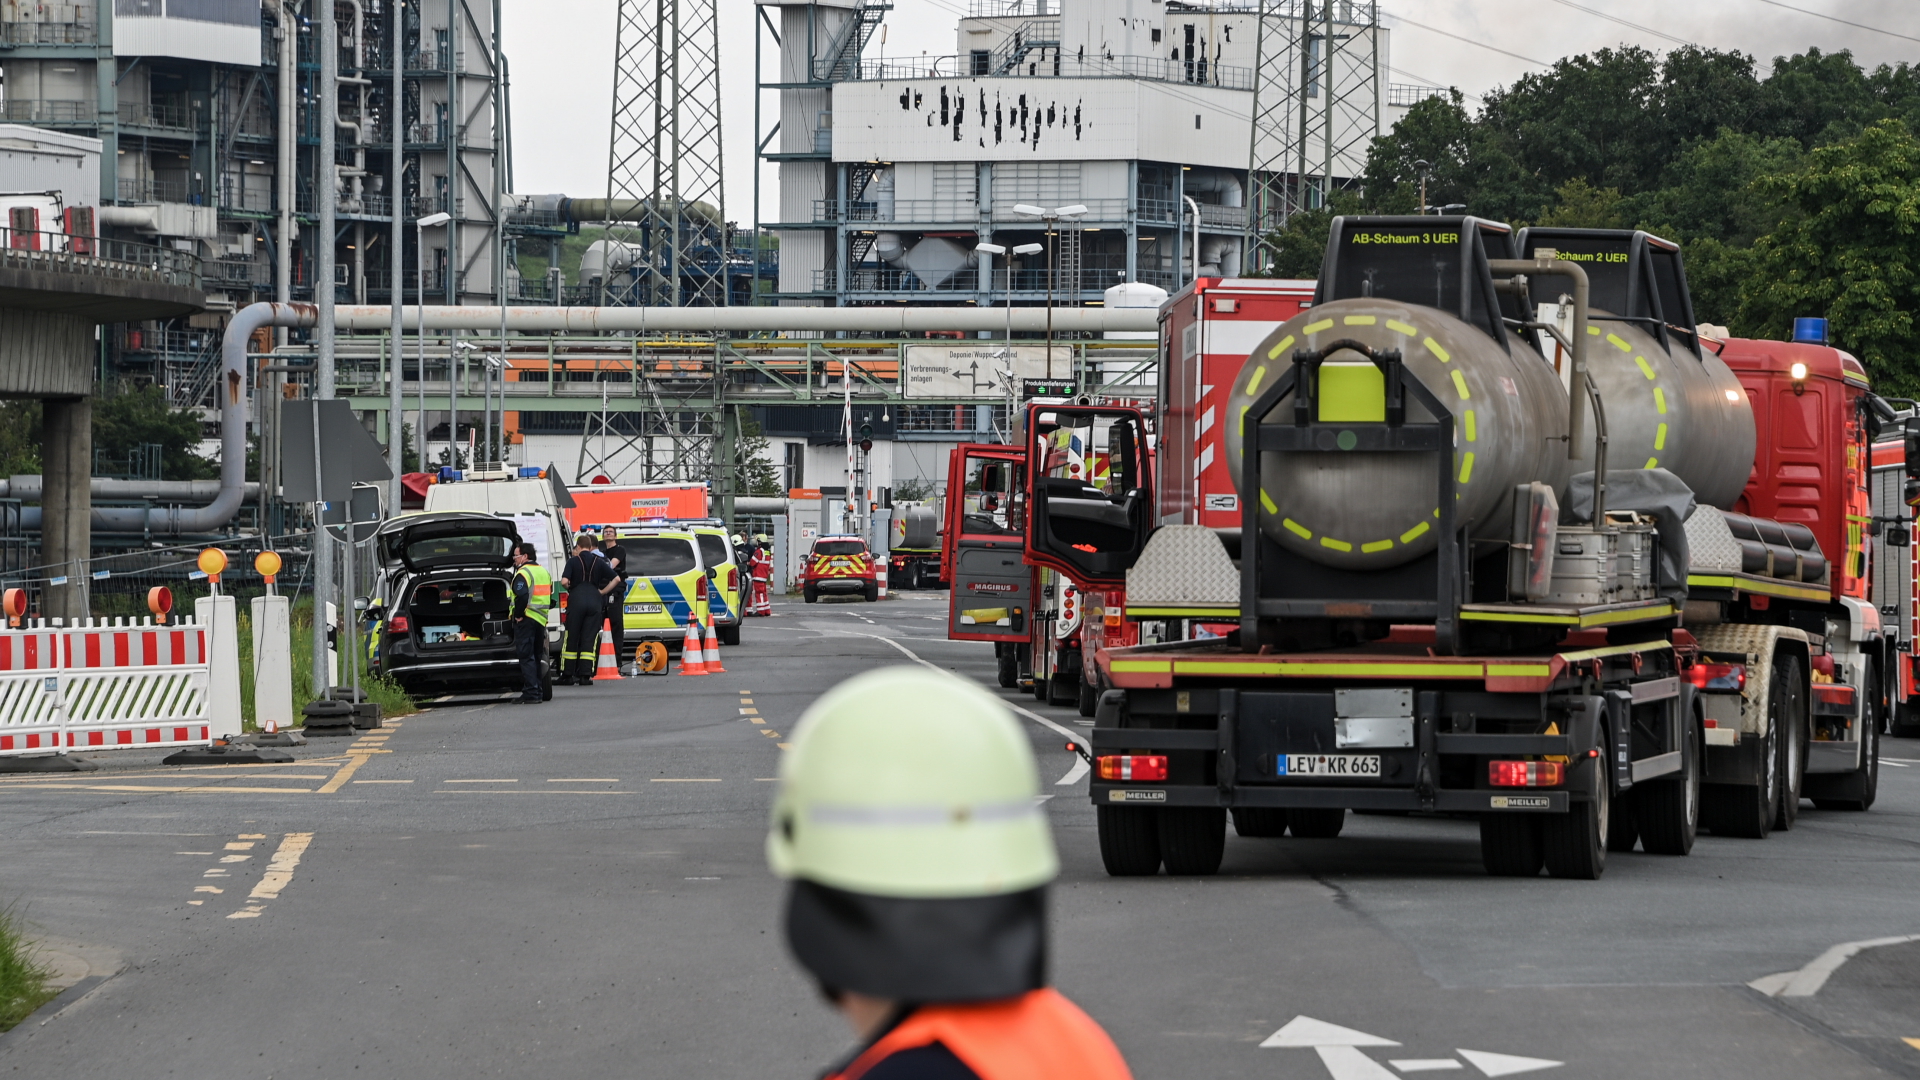 Feuerwehr- und Polizeiwagen und Einsatzkräfte stehen vor dem Chempark-Gelände in Leverkusen, auf dem sich eine schwere Explosion ereignet hat. | EPA